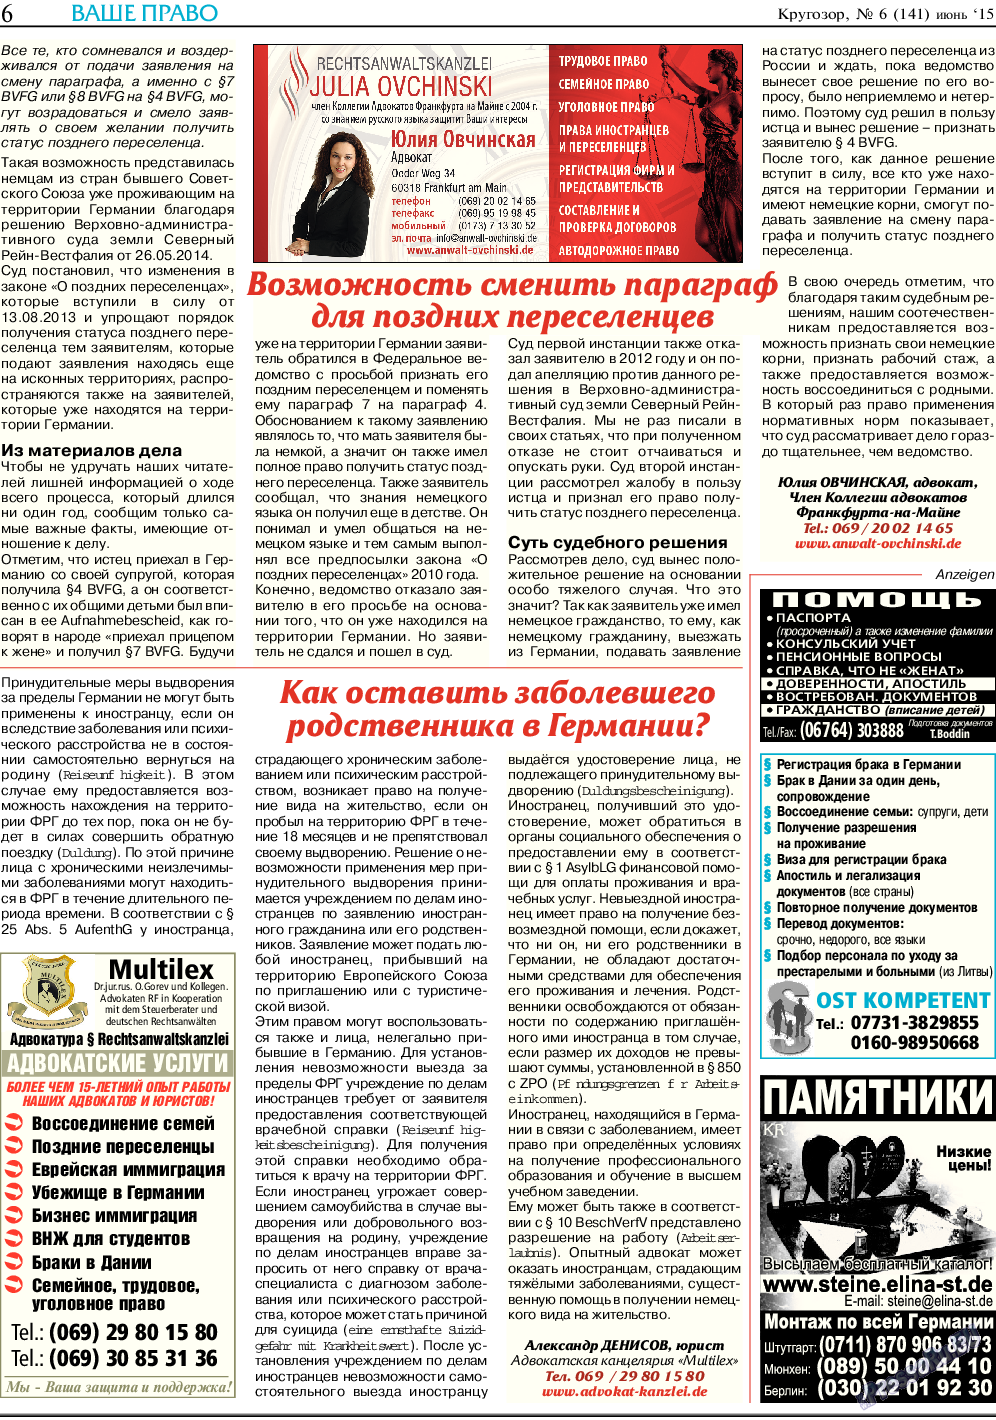 Кругозор, газета. 2015 №6 стр.6